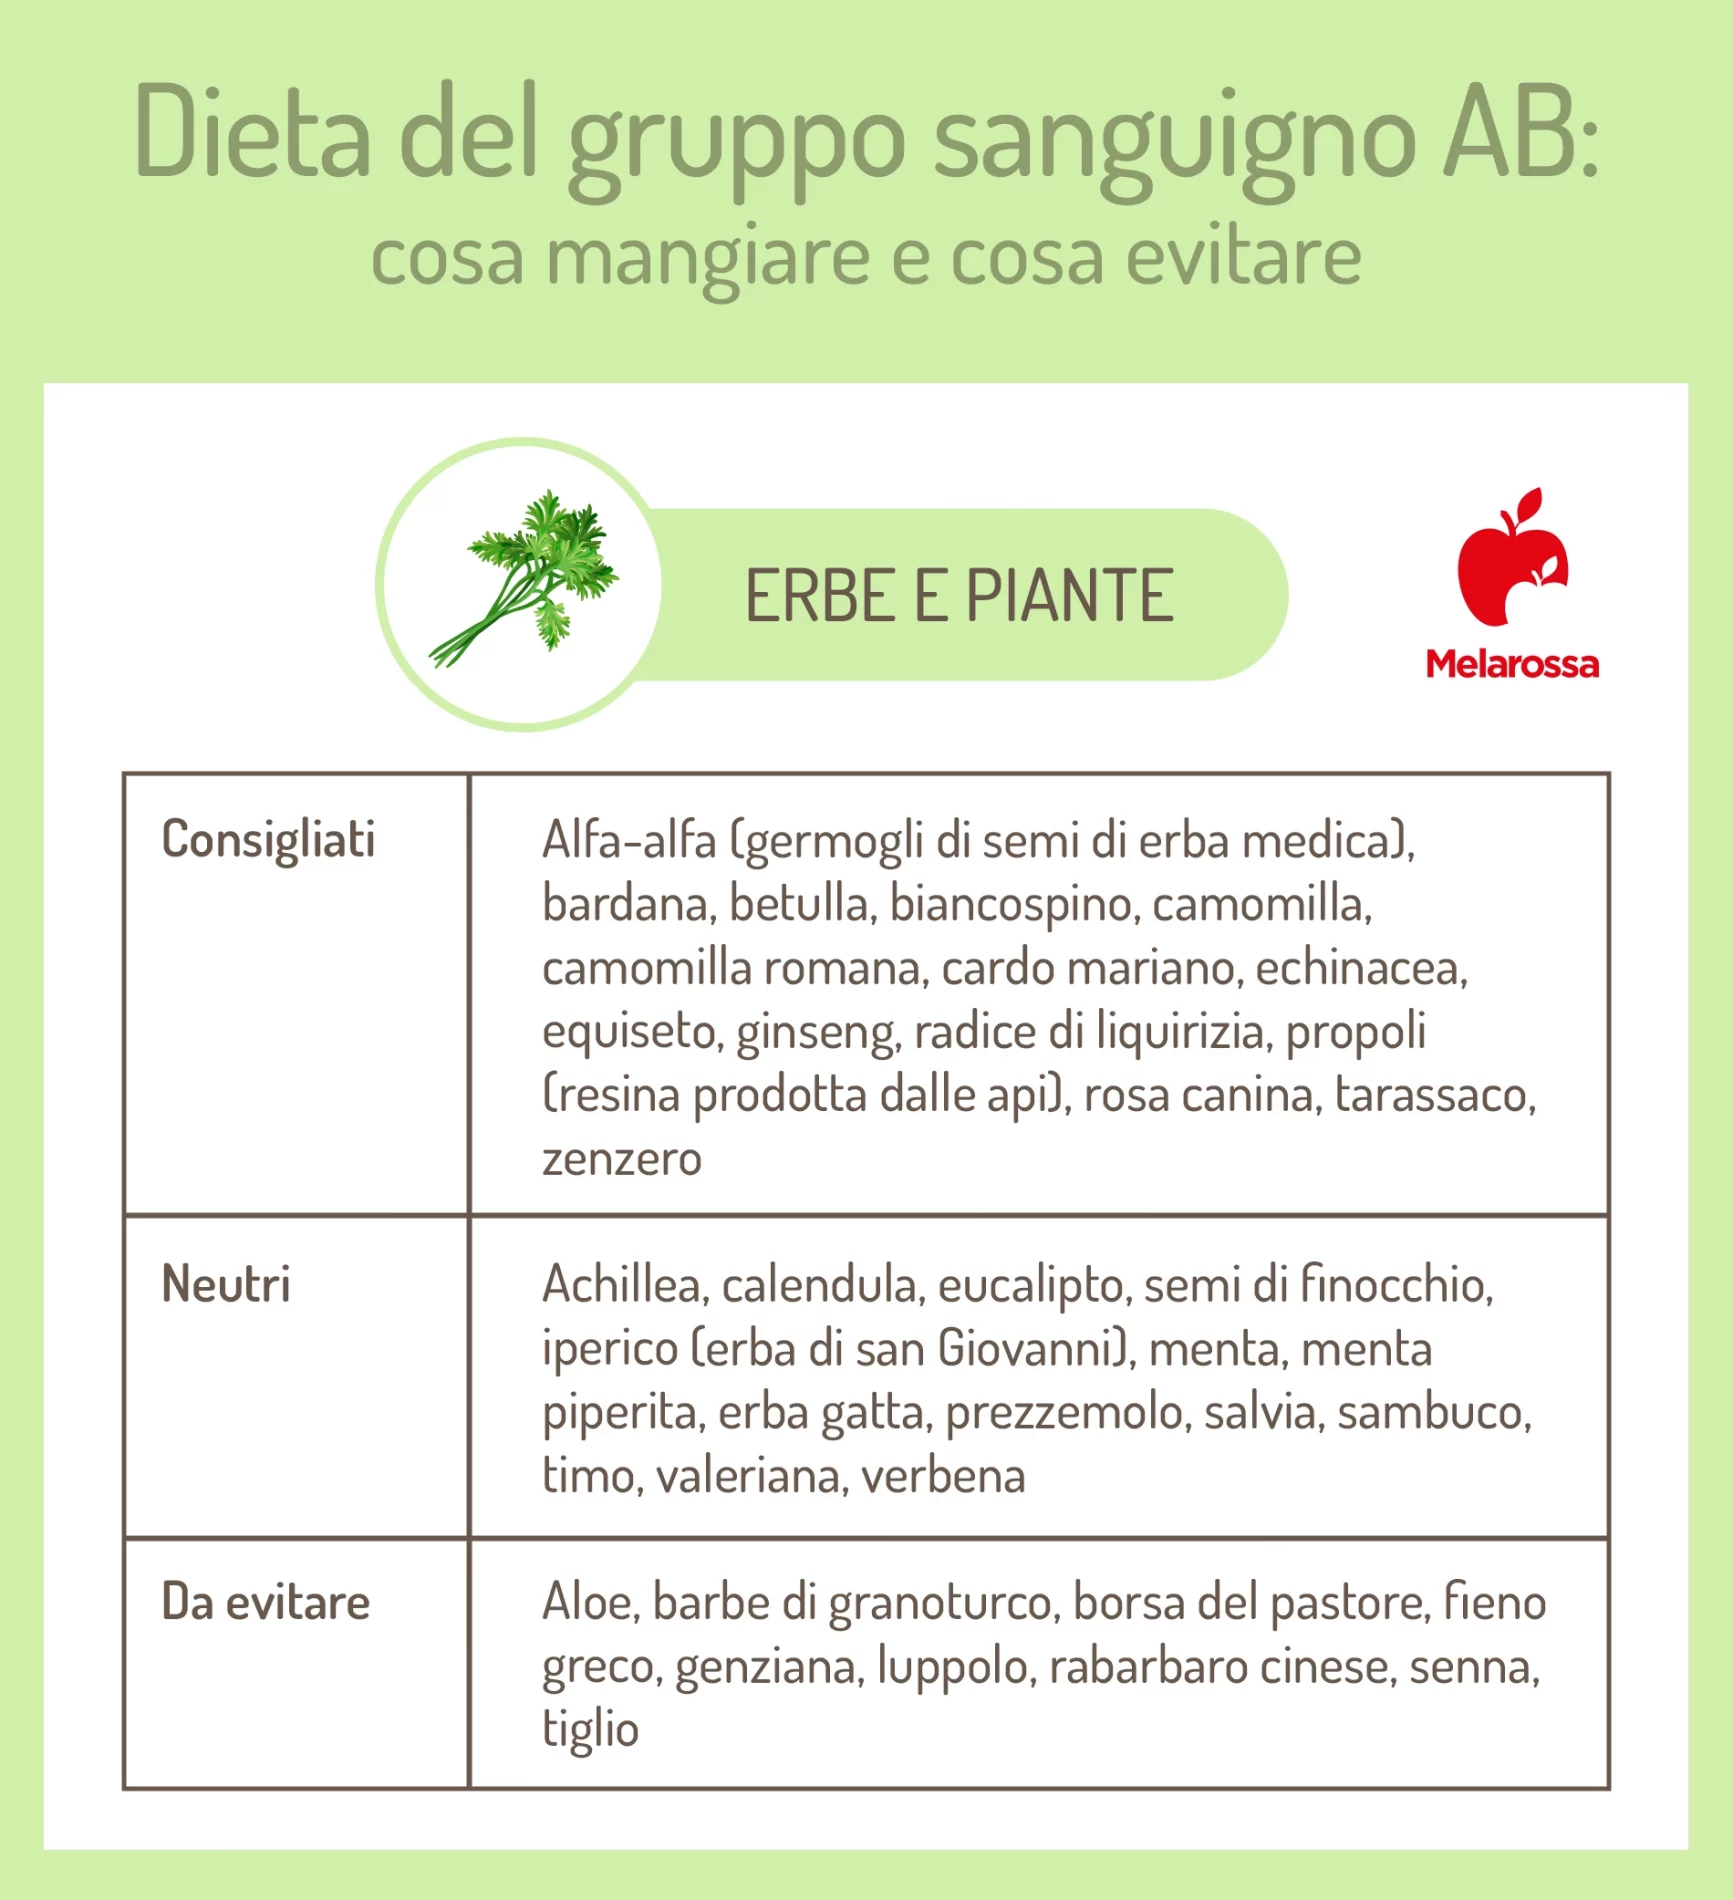 dieta gruppo sanguigno AB: erbe e piante